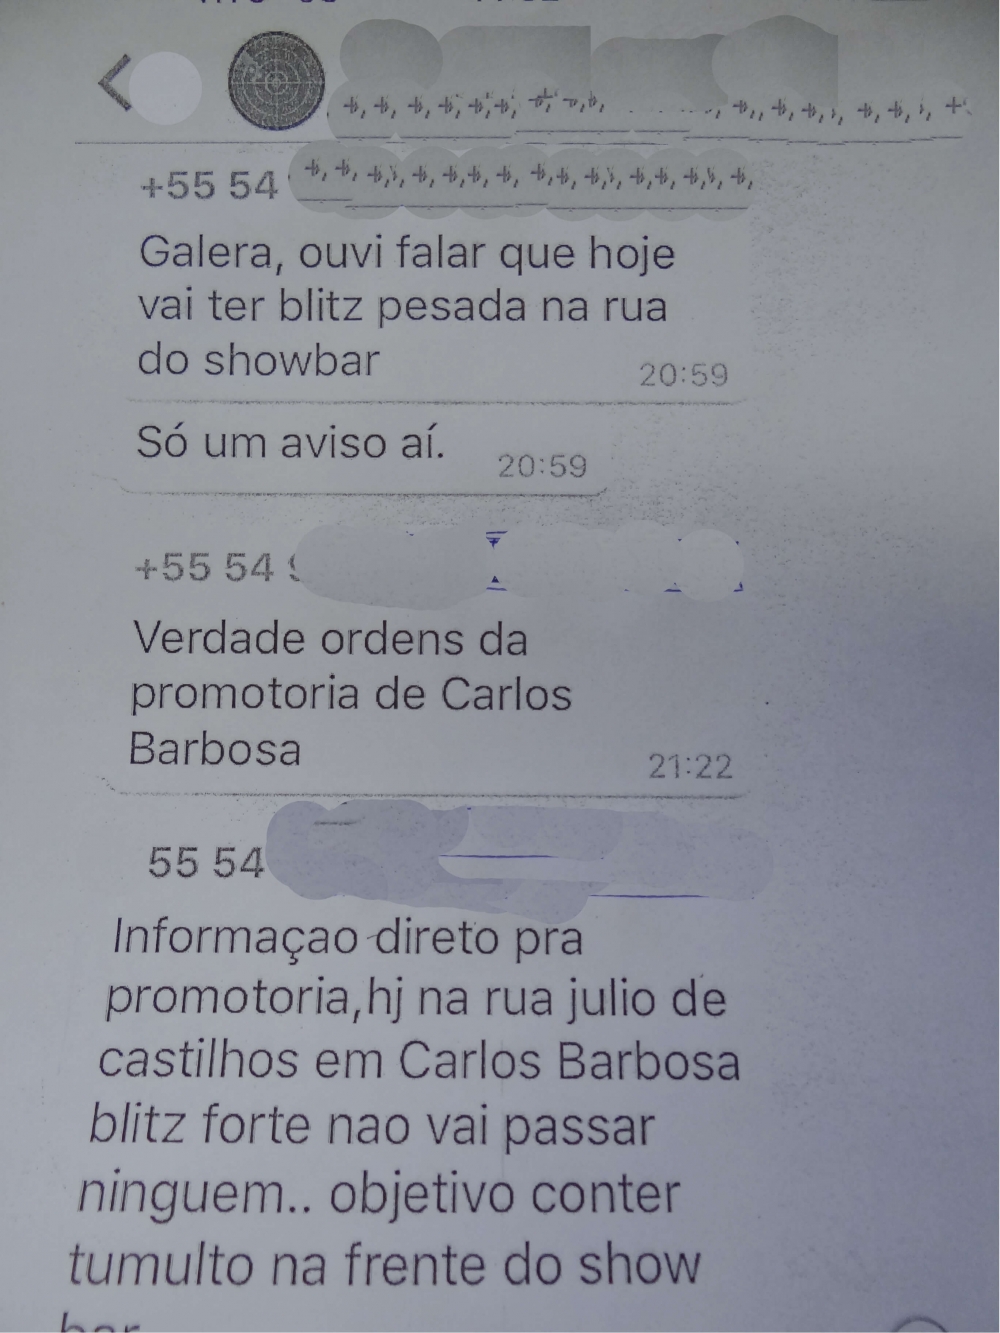 Exclusivo: Servidor afastado em Carlos Barbosa não foi avisado da operação